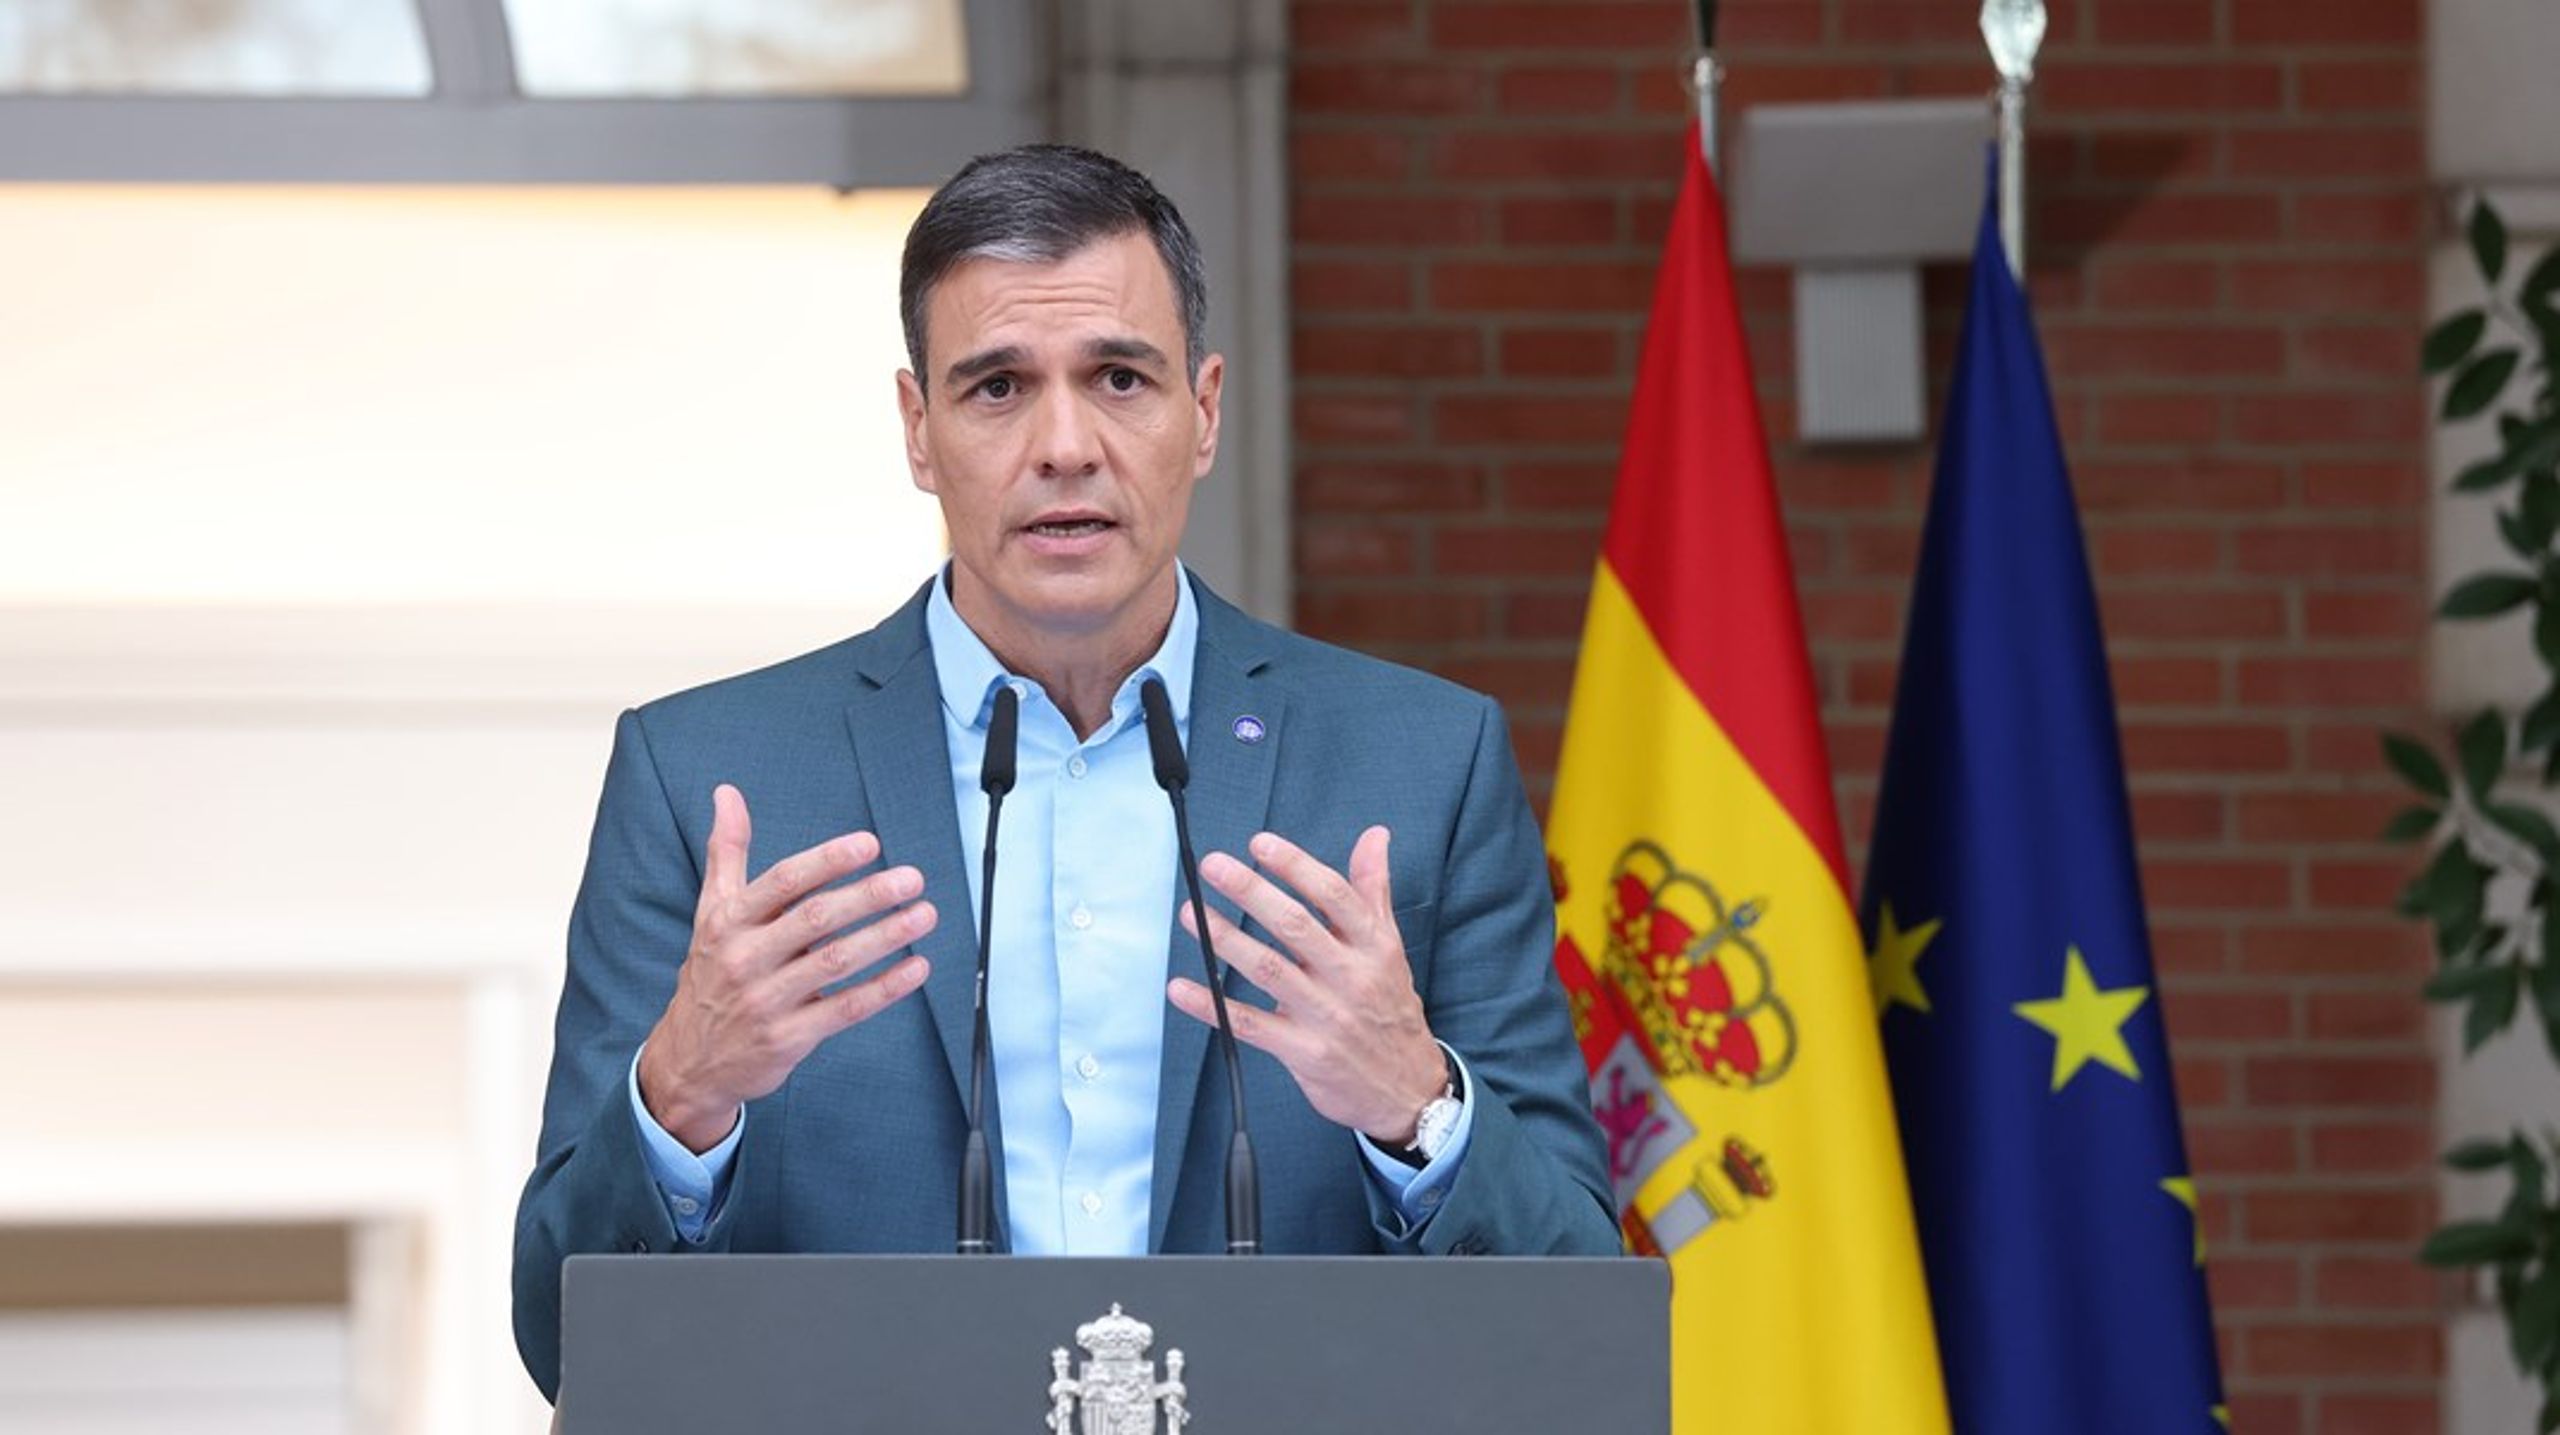 Pedro Sánchez har varit Spaniens premiärminister i nästan sex år och är ordförande för det spanska socialistpartiet.